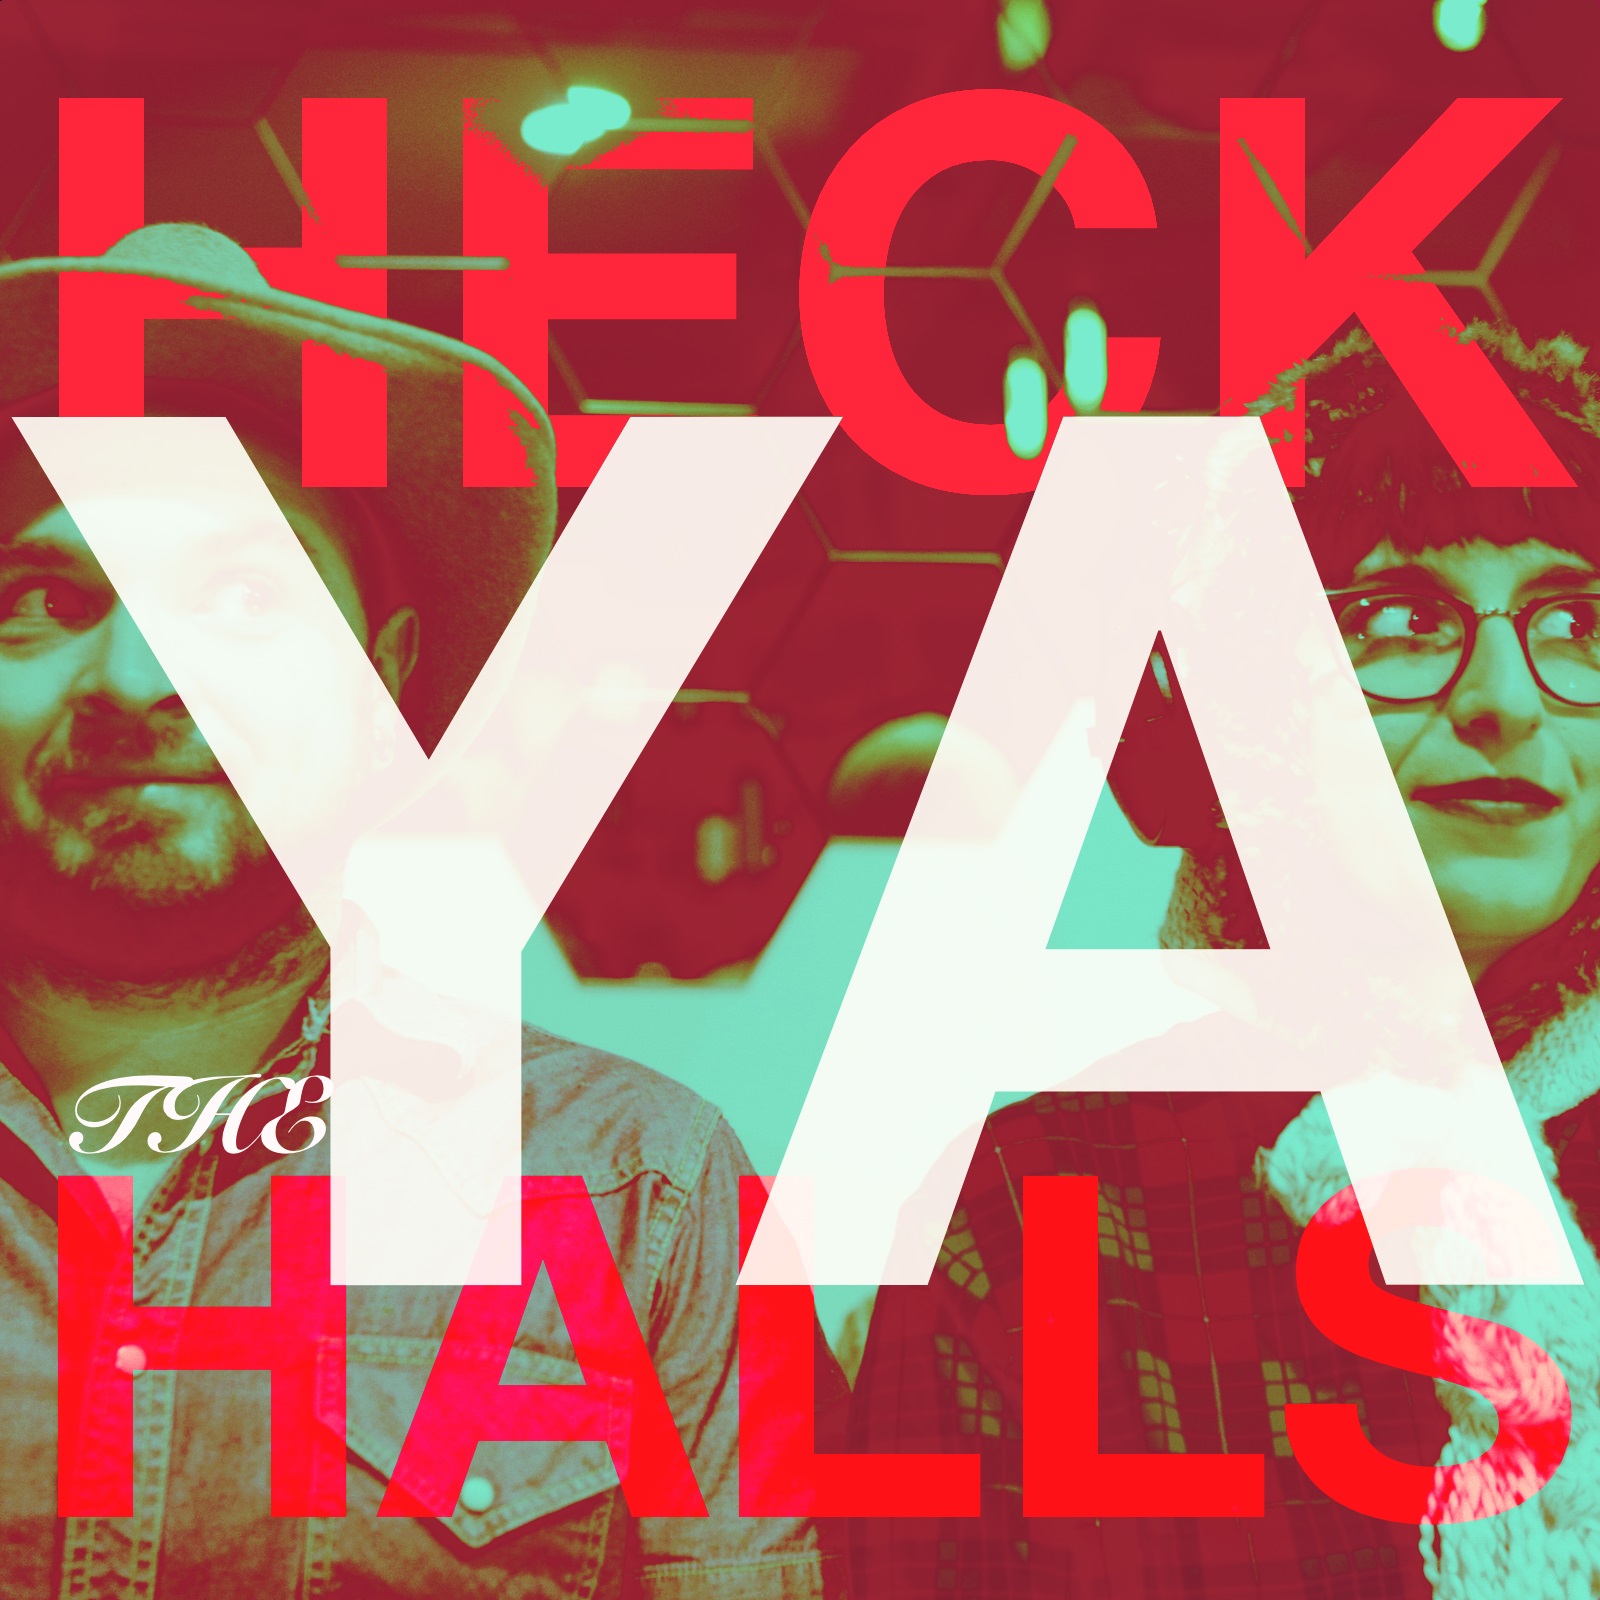 Heck Ya the Halls Vol. 1